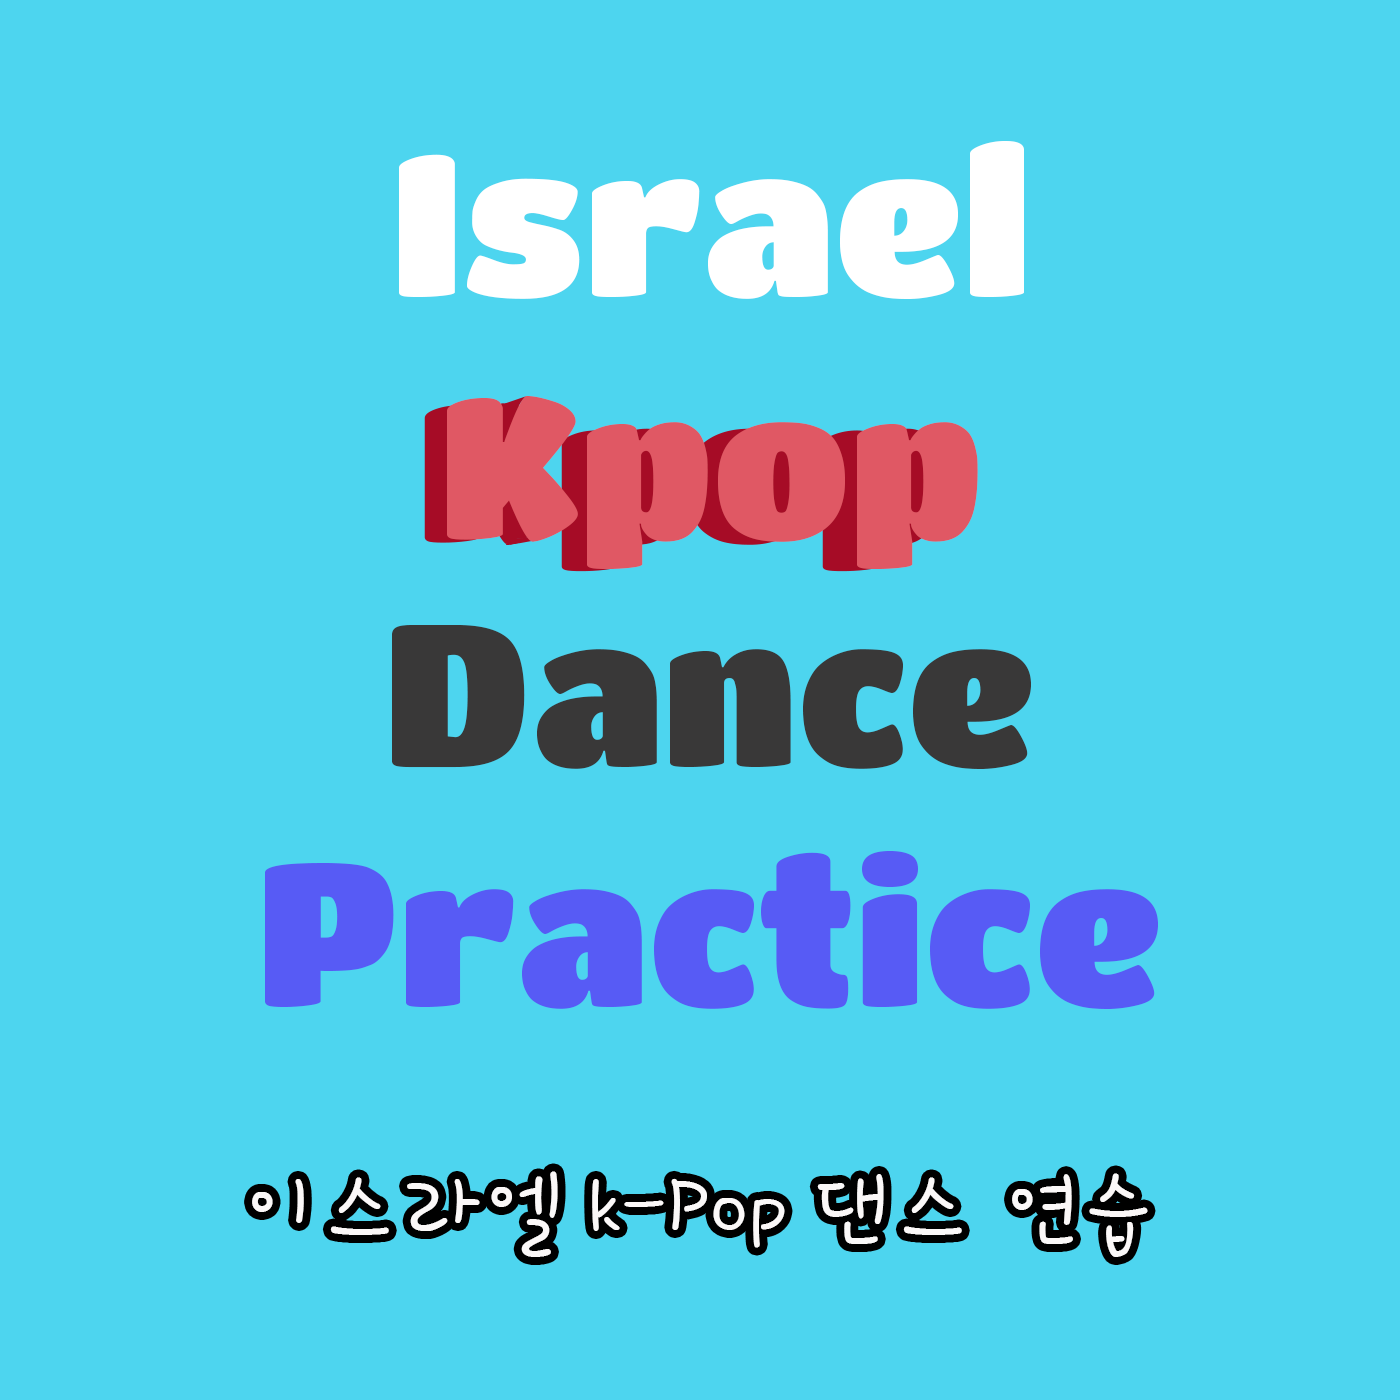 Israel Kpop Dance Practice